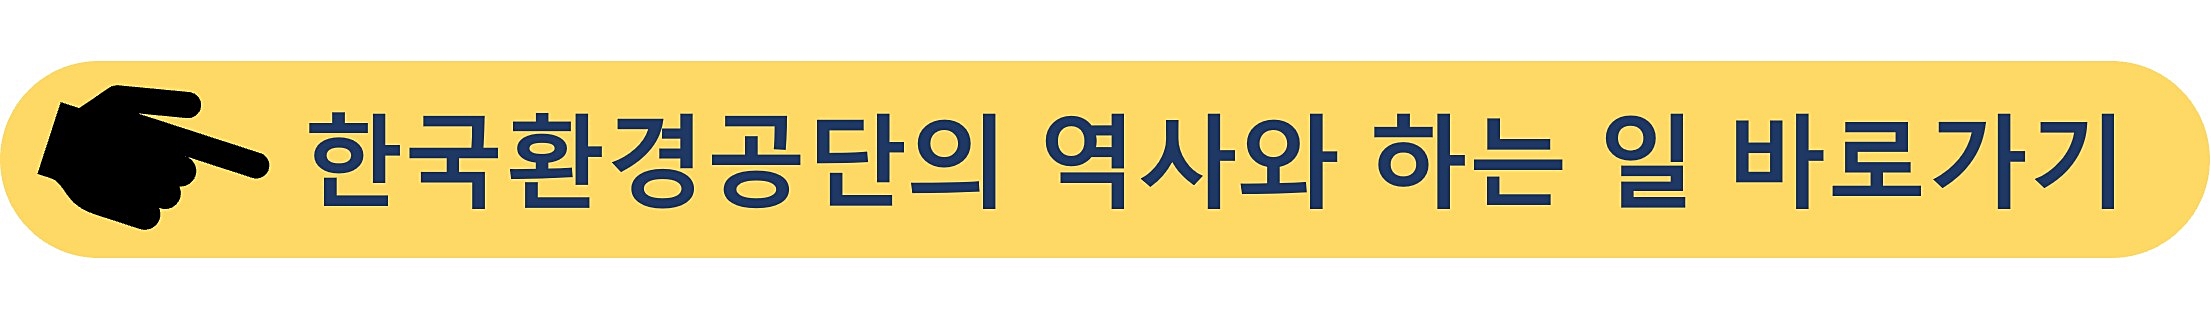 한국환경공단-입사